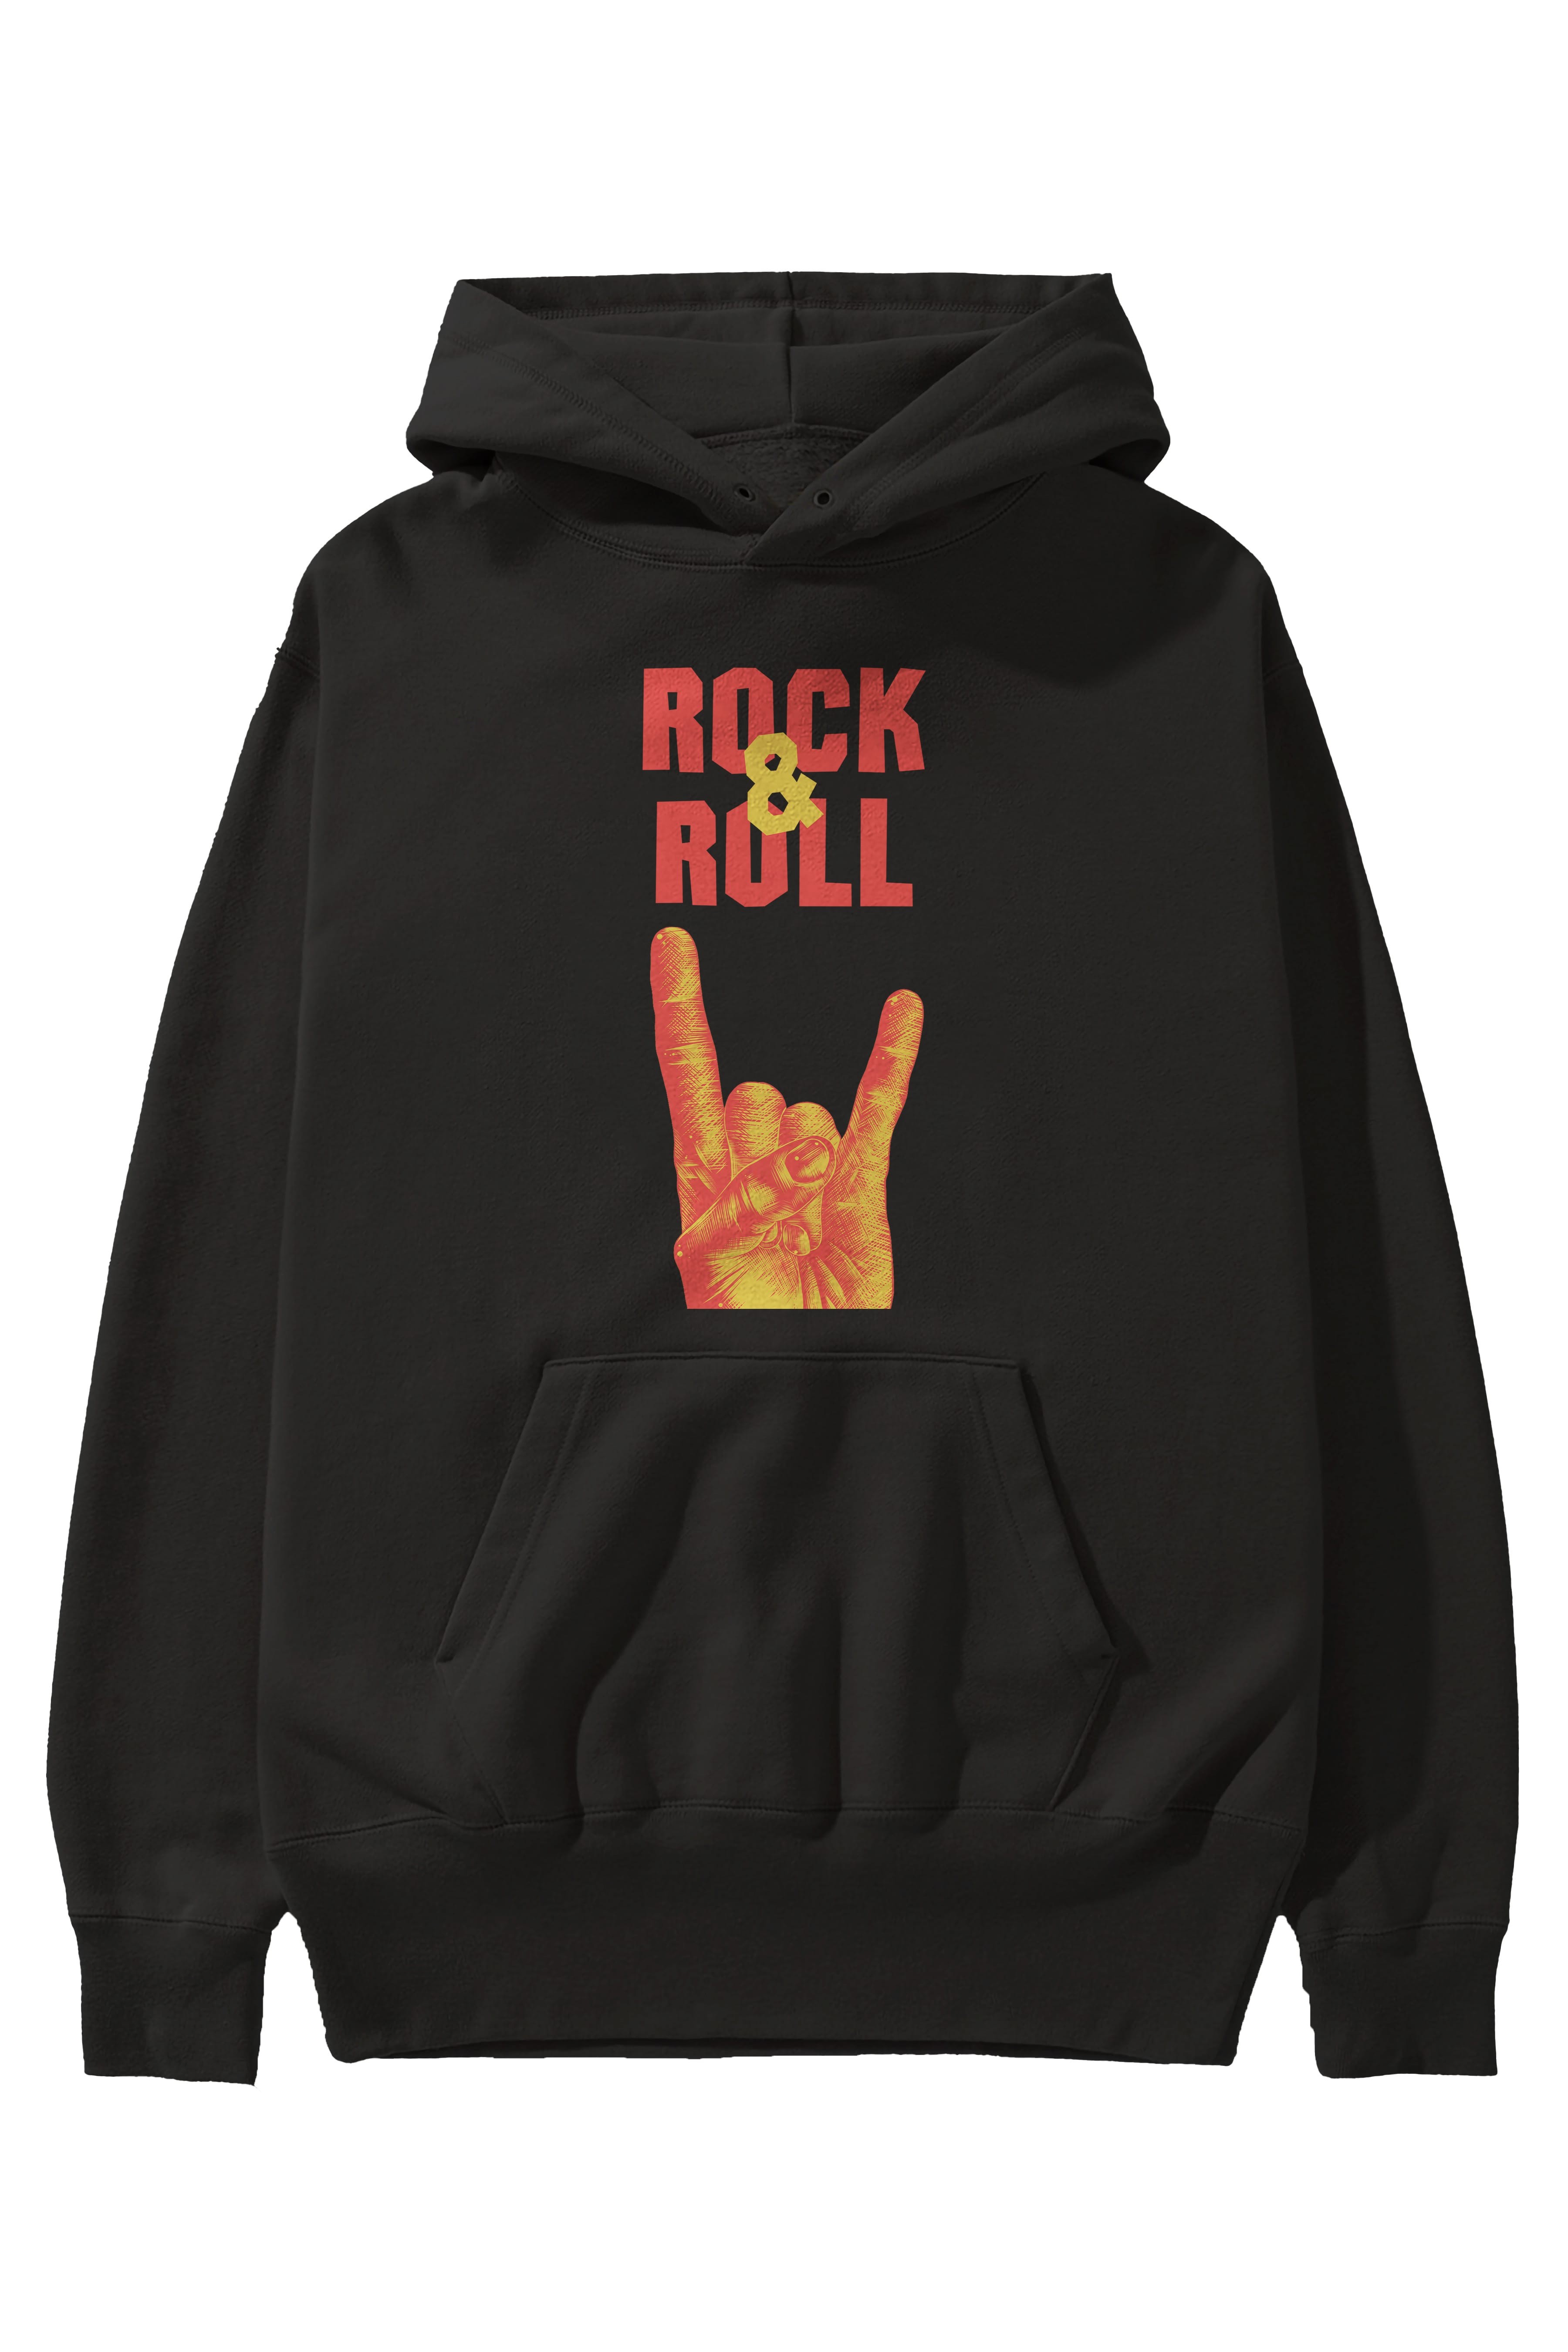 Rock & Roll Yazılı Ön Baskılı Oversize Hoodie Kapüşonlu Sweatshirt Erkek Kadın Unisex